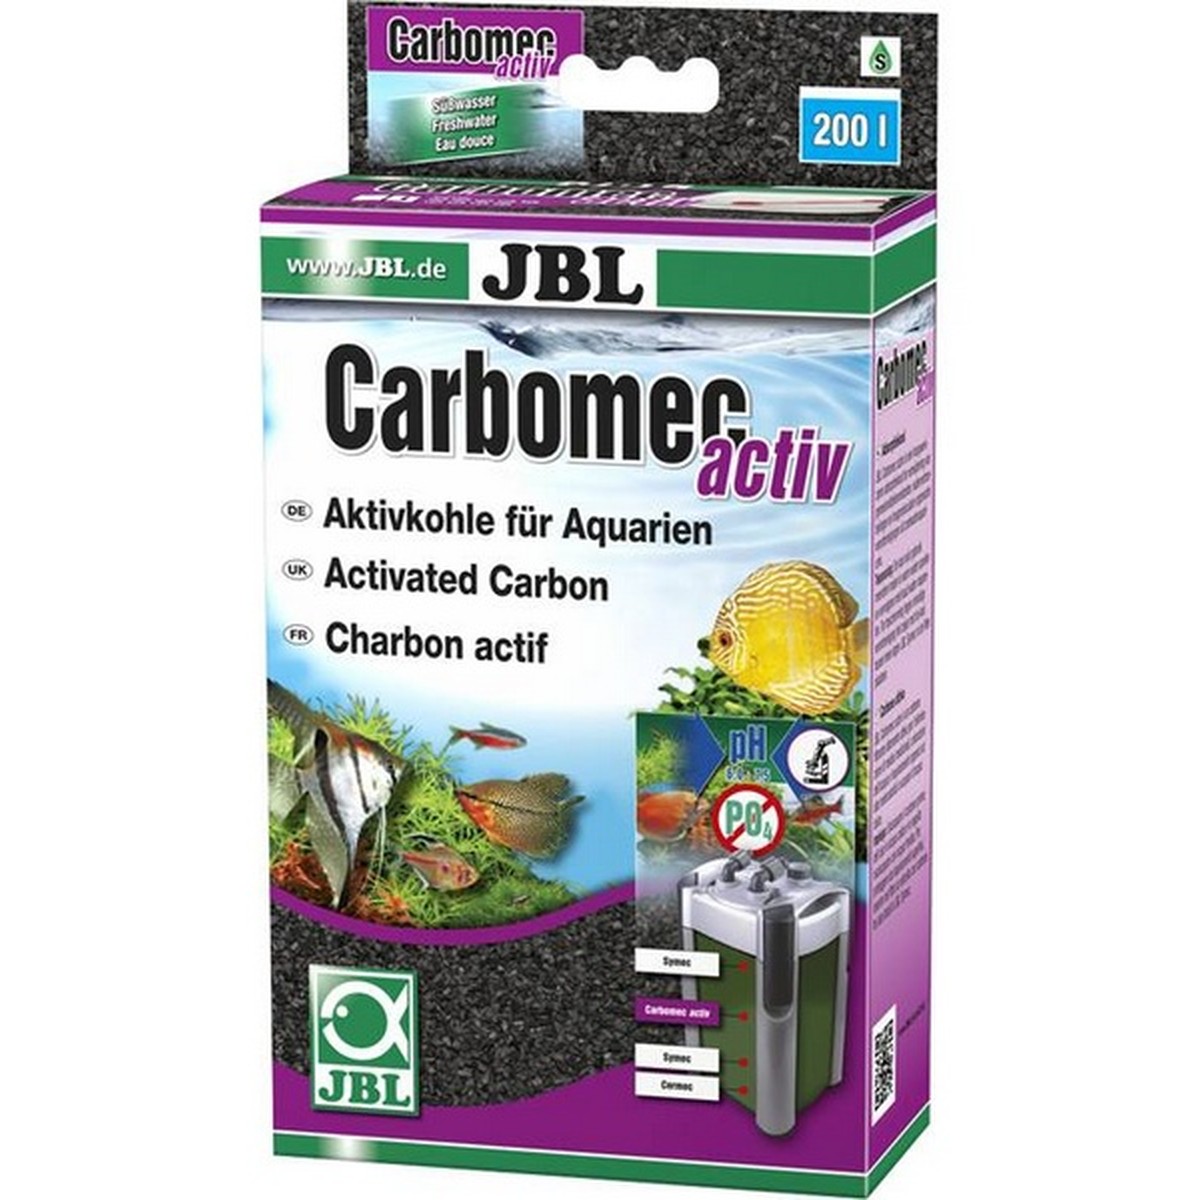   JBL Carbomec actif. 400 g  